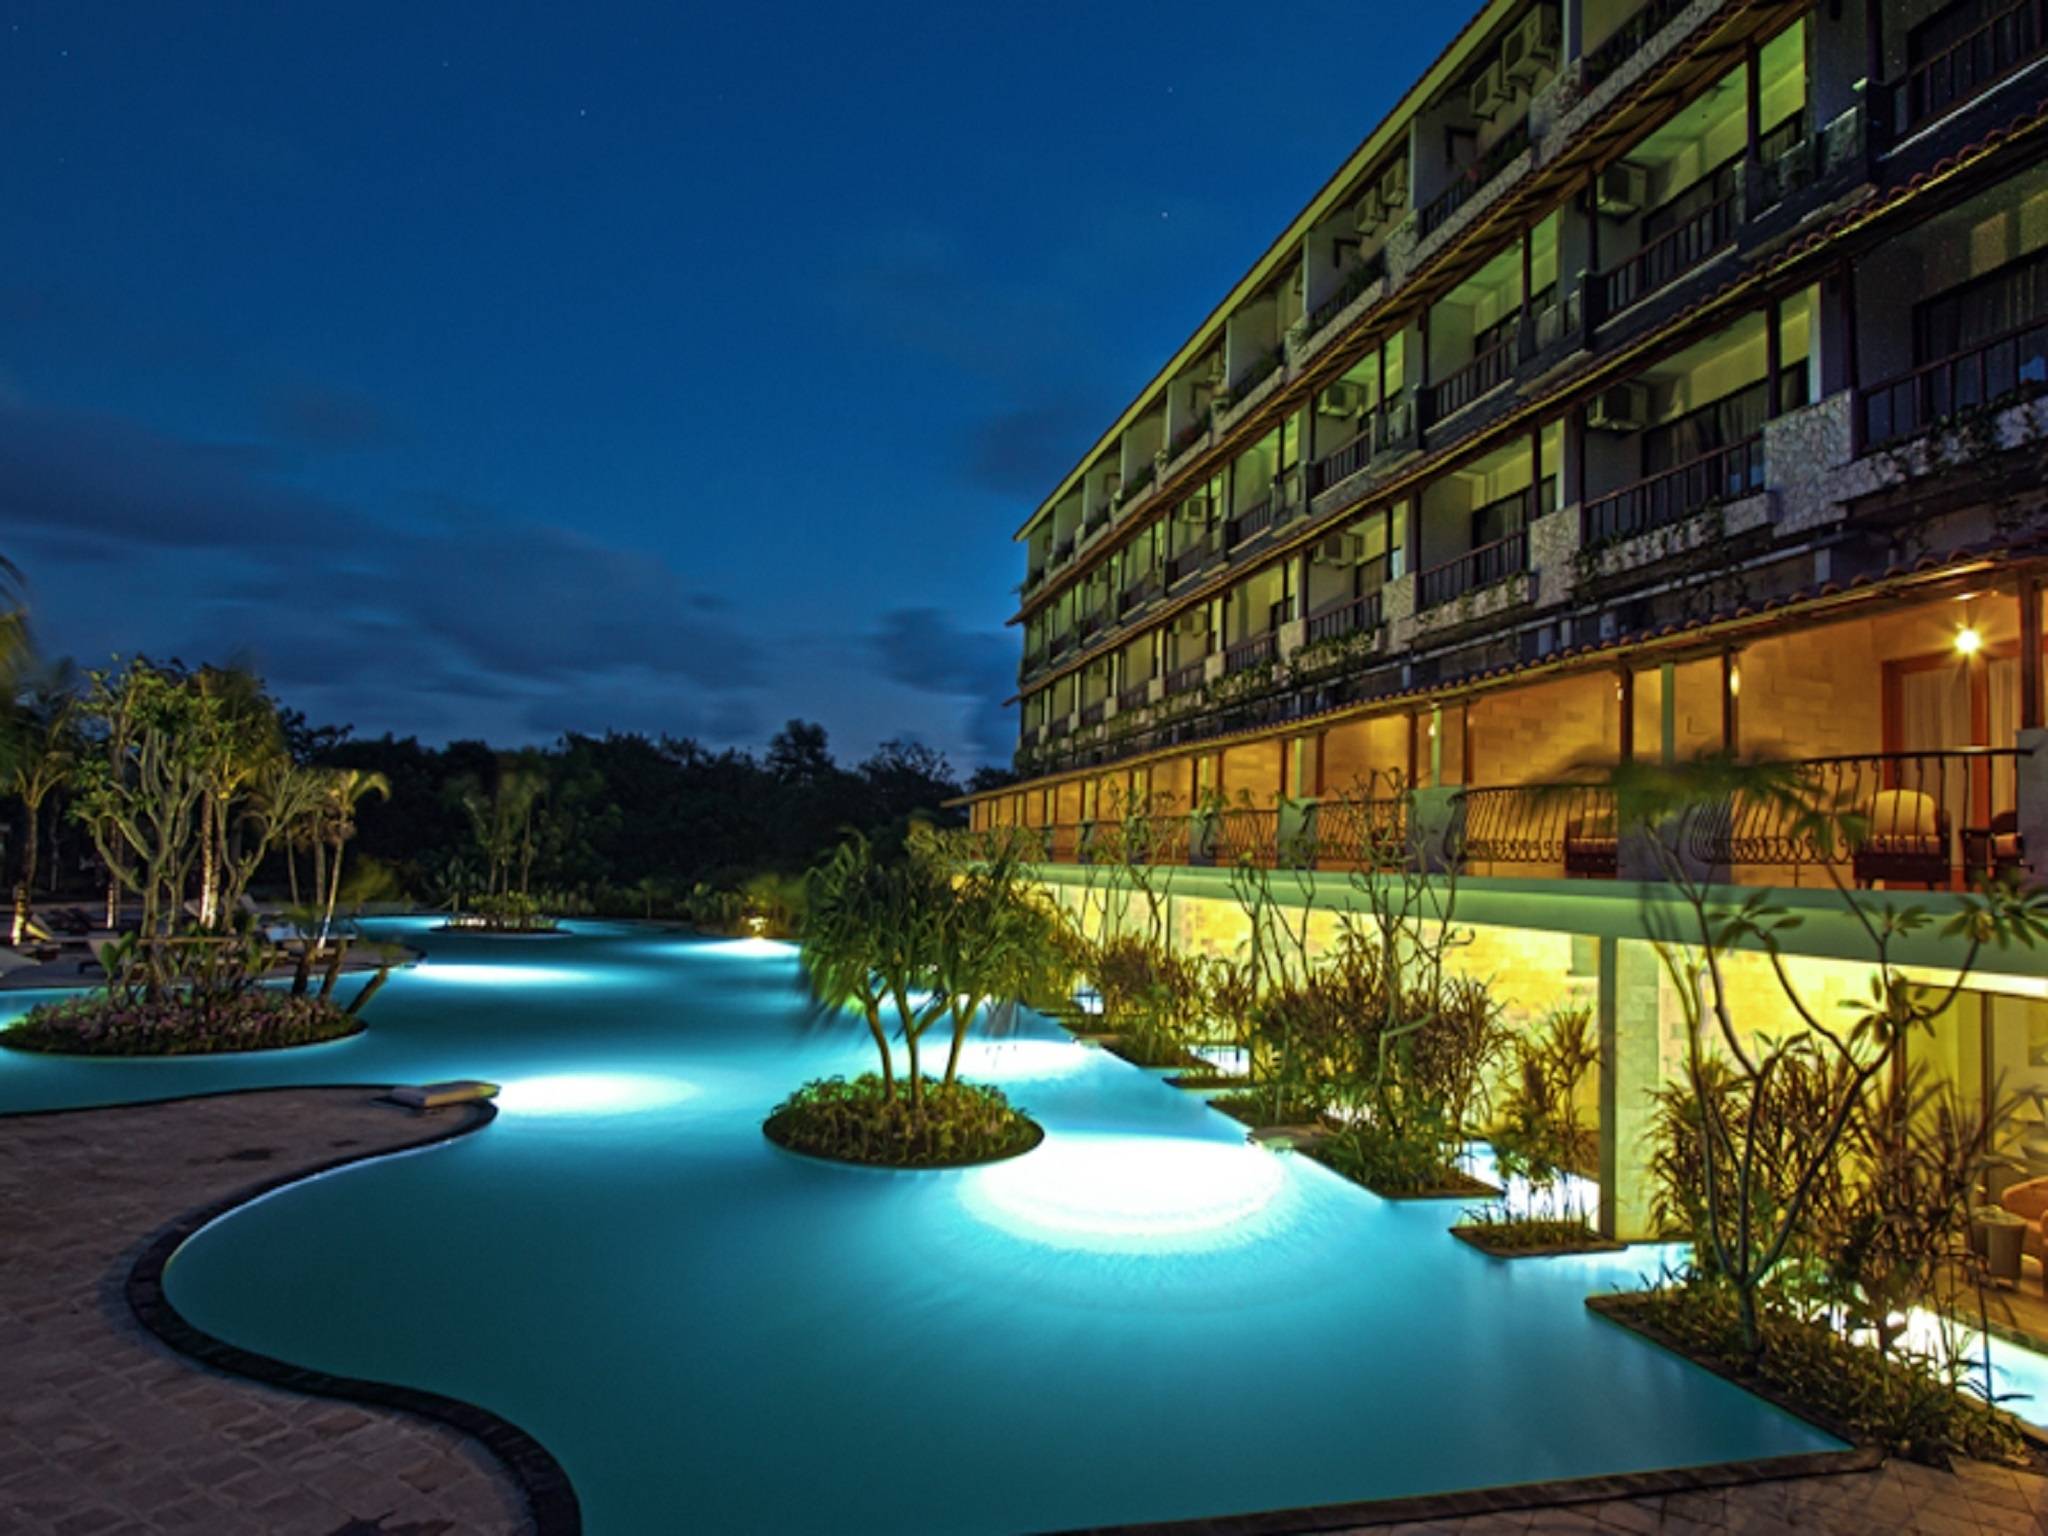 Swiss-Belhotel Segara - 4 HRS star hotel in Nusa Dua (Bali)